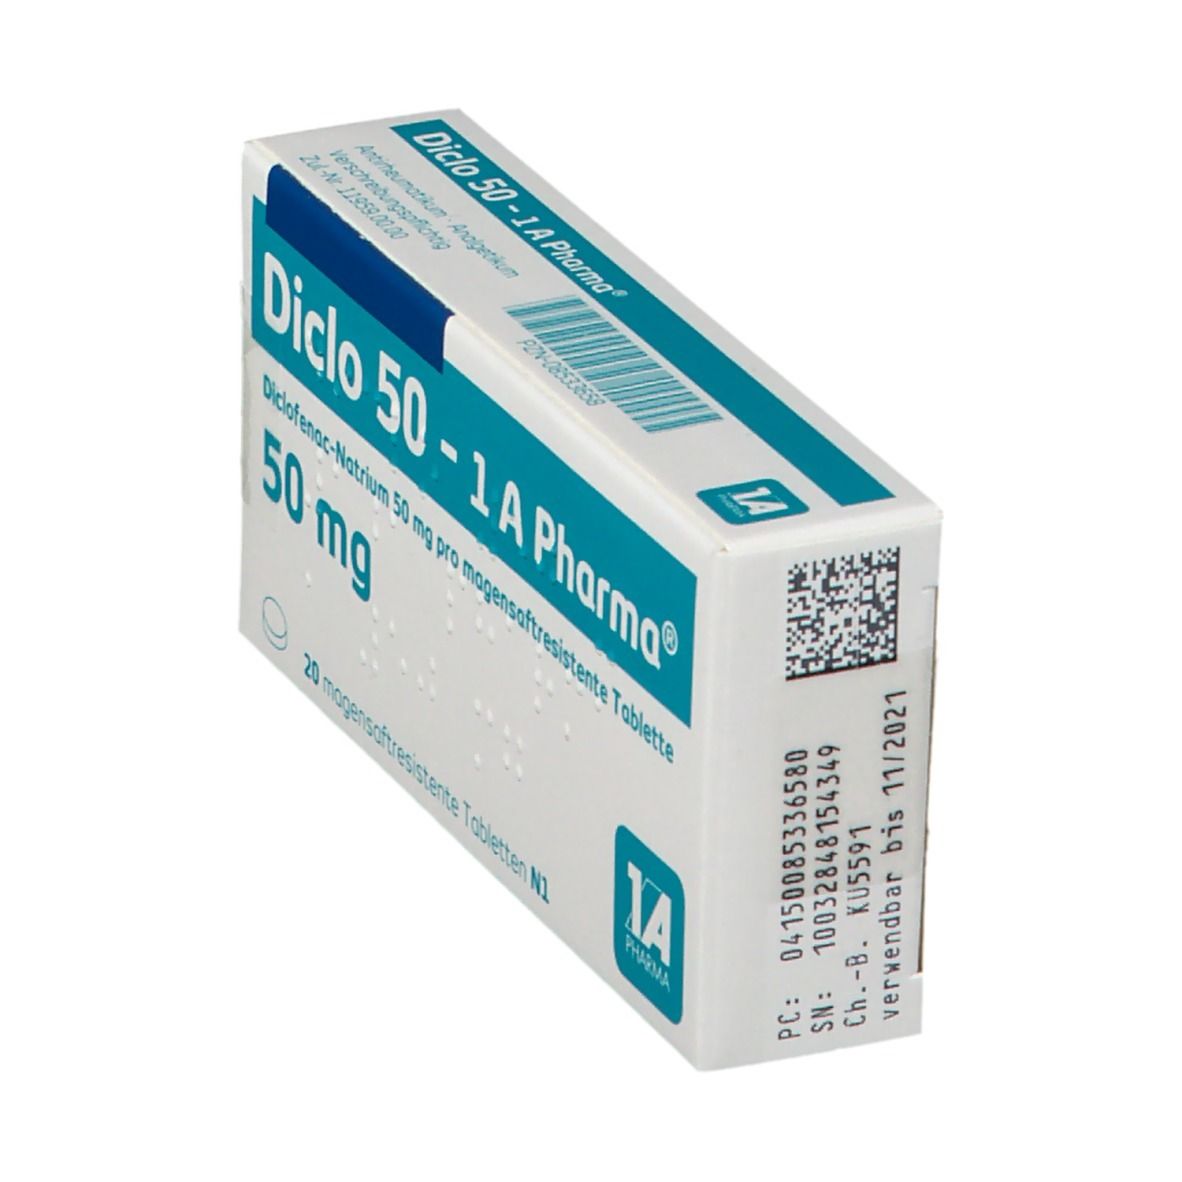 Diclo 50 1A Pharma®